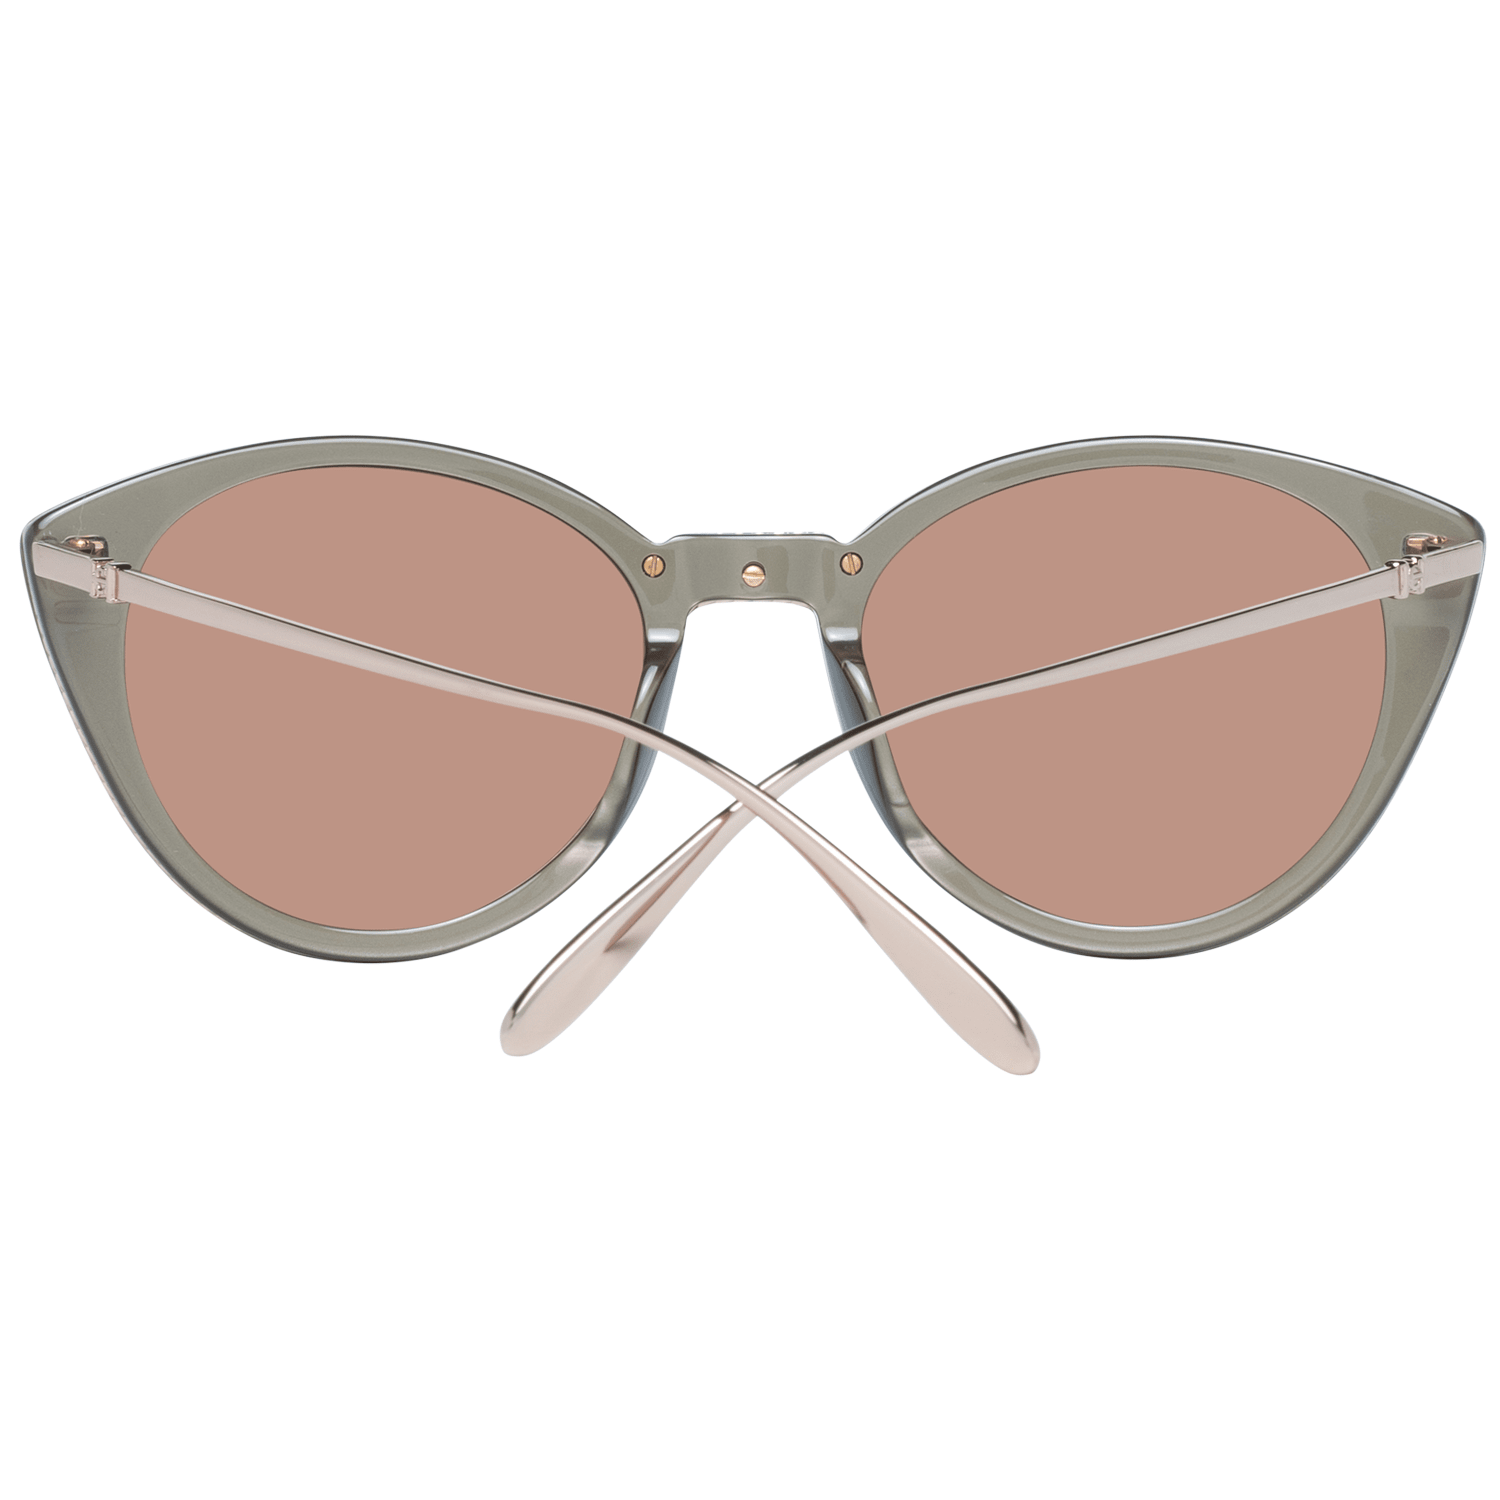 Olive Women Sunglasses